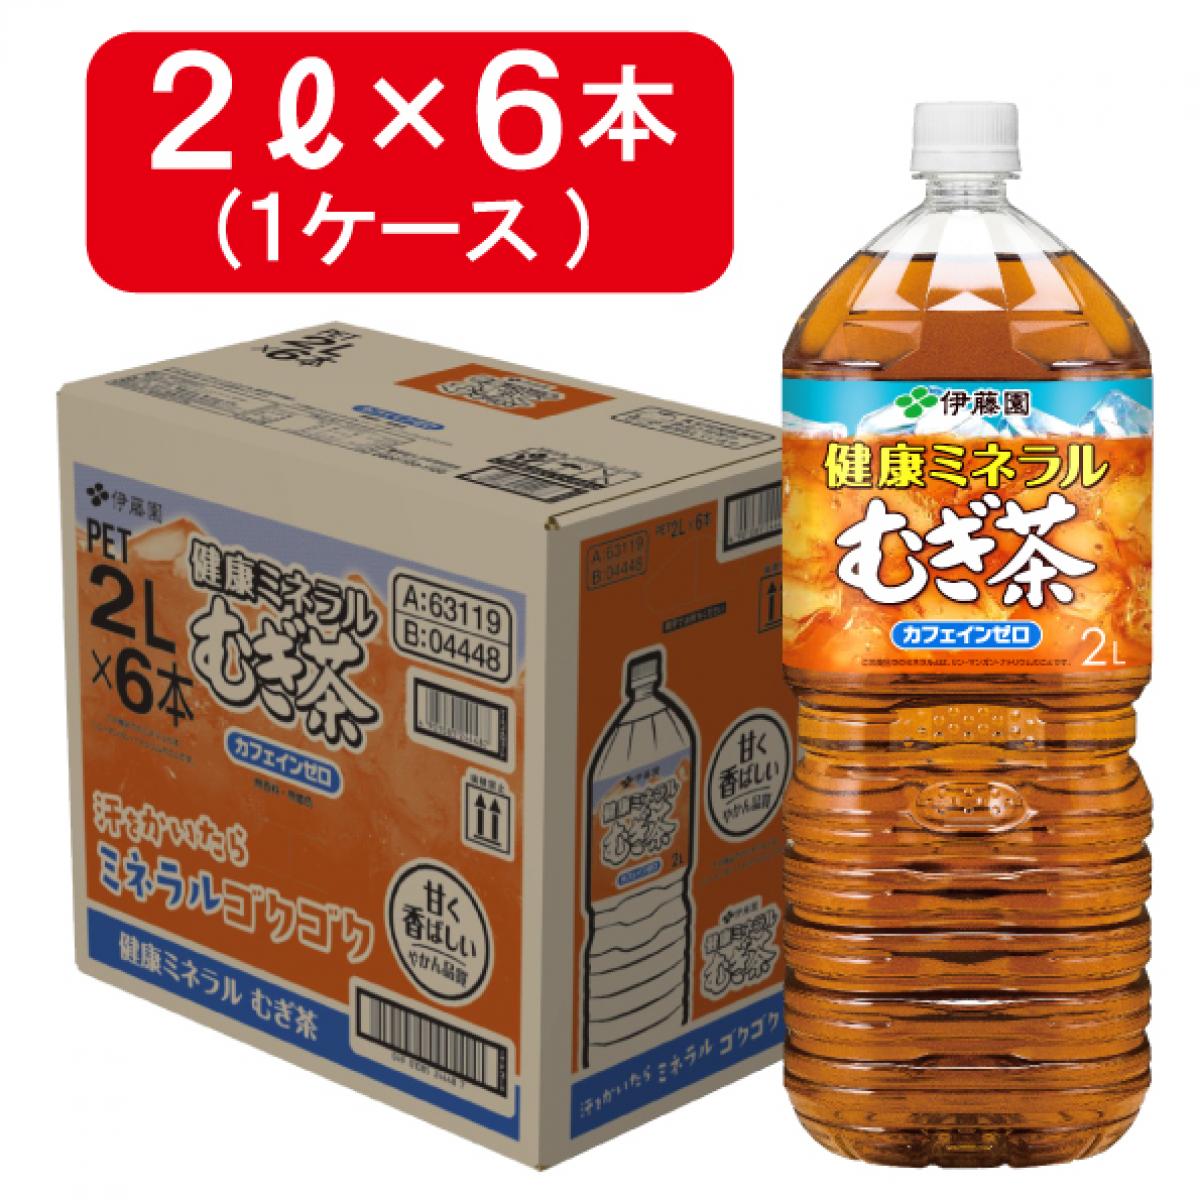 高品質新品 伊藤園 健康 ミネラル麦茶 PET 2L×6本 箱買い まとめ買い ストック